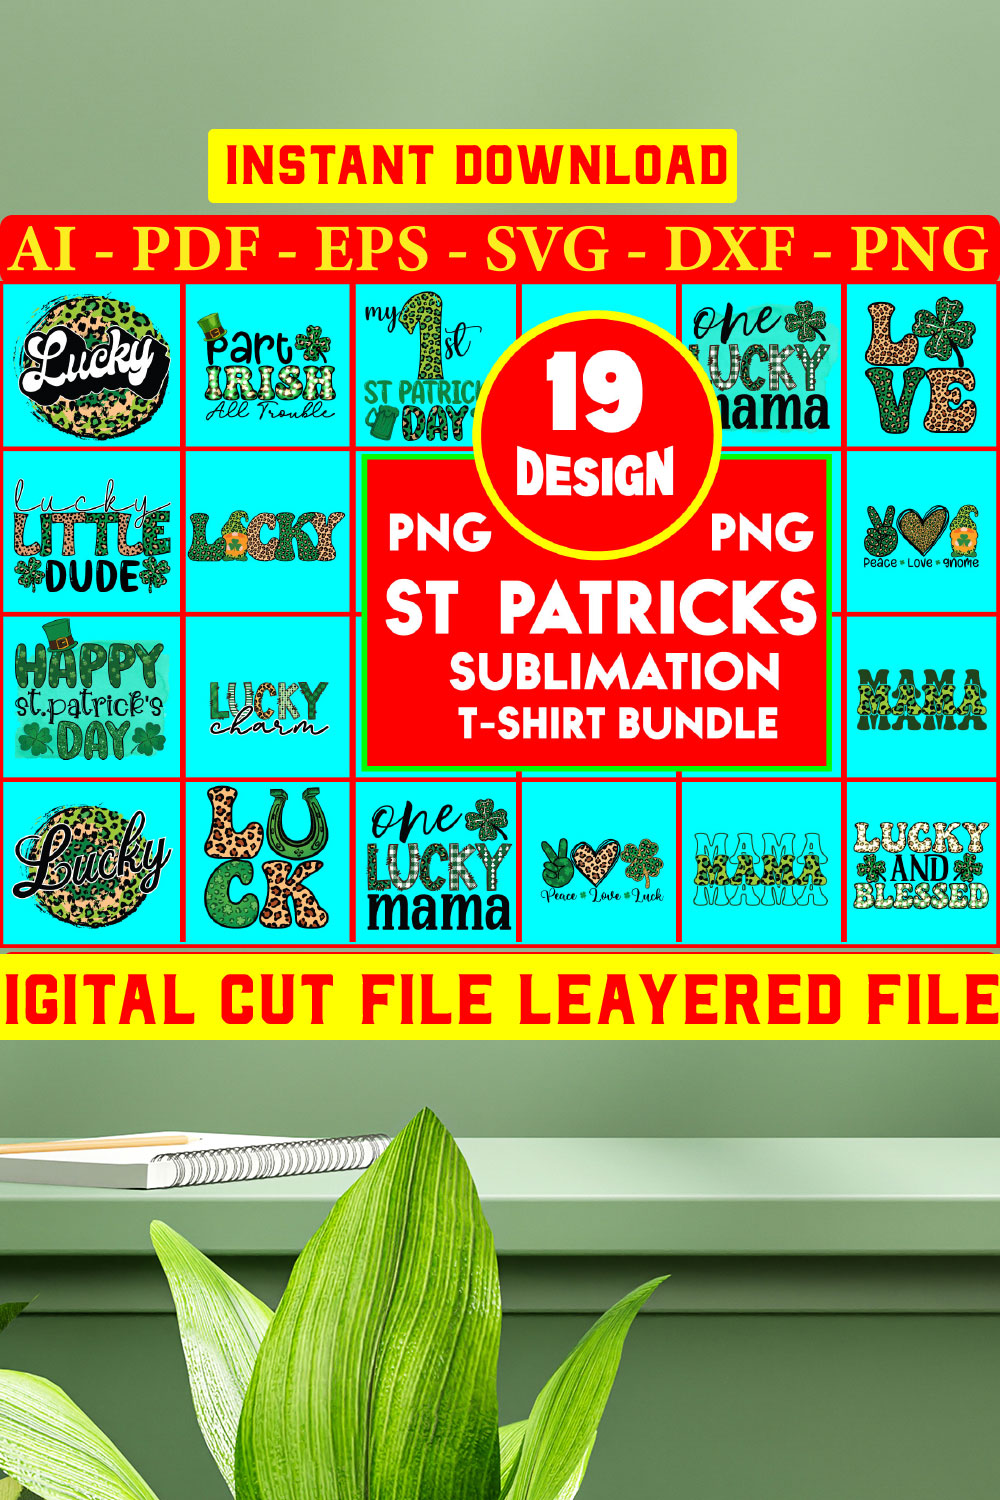 St Patricks sublimation T-shirt Bundle pinterest preview image.